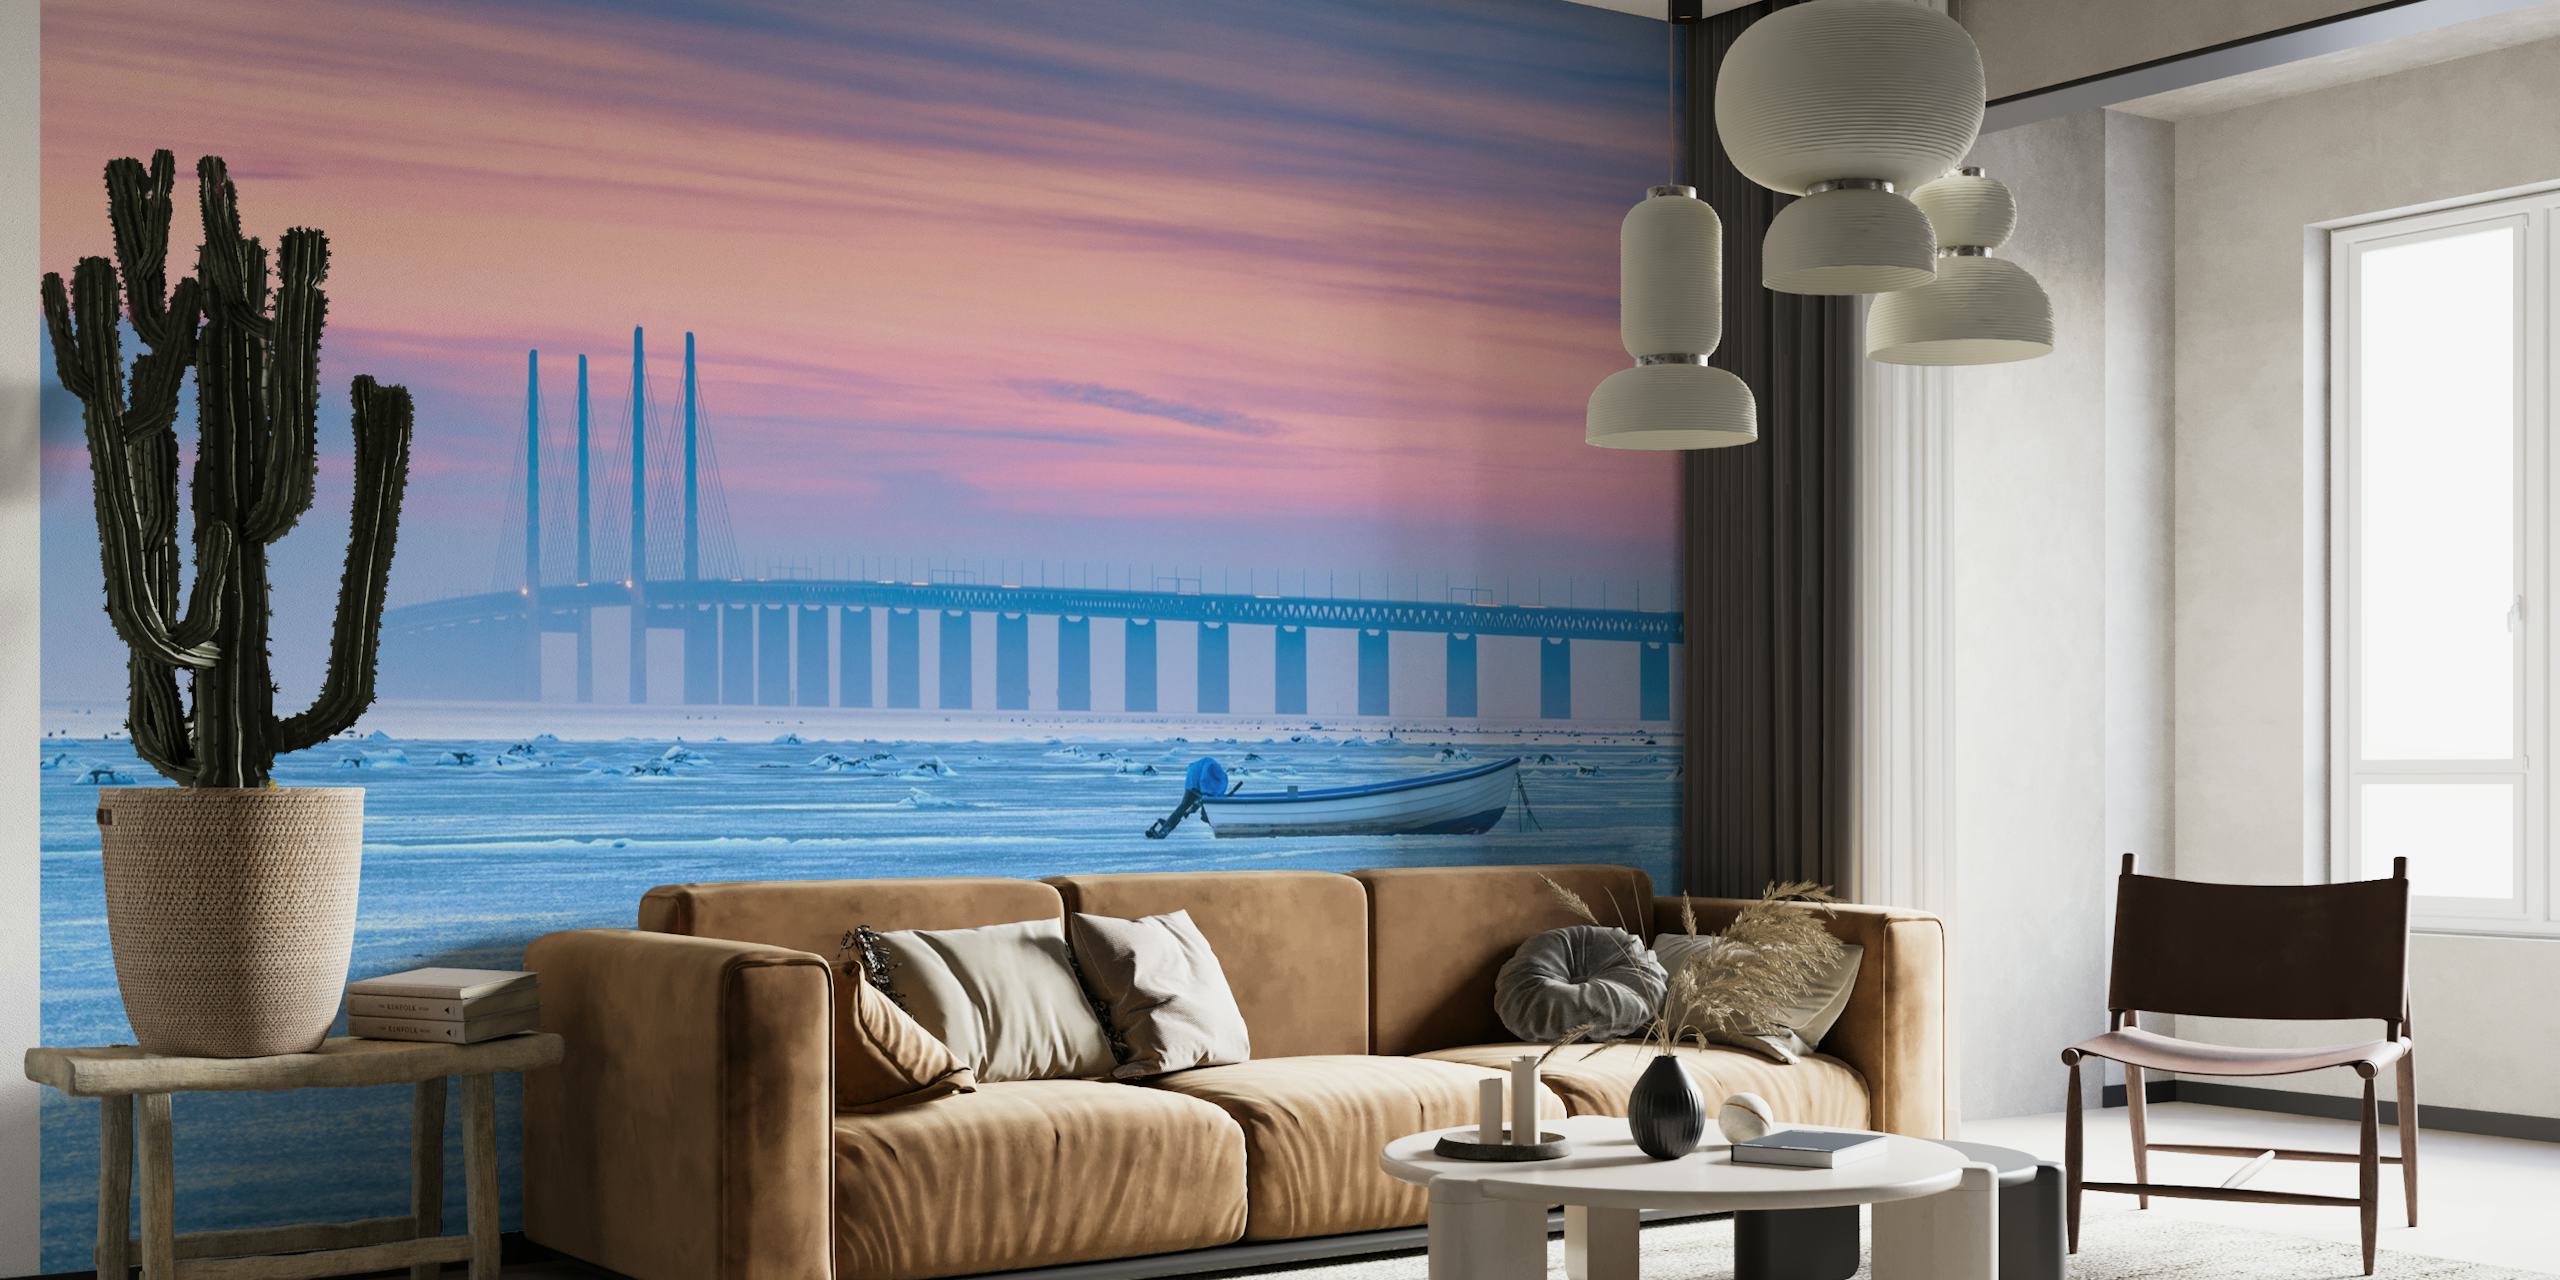 Fototapeta przedstawiająca zamarznięte morze ze spokojnym pastelowym niebem, odległy most i samotną łódź